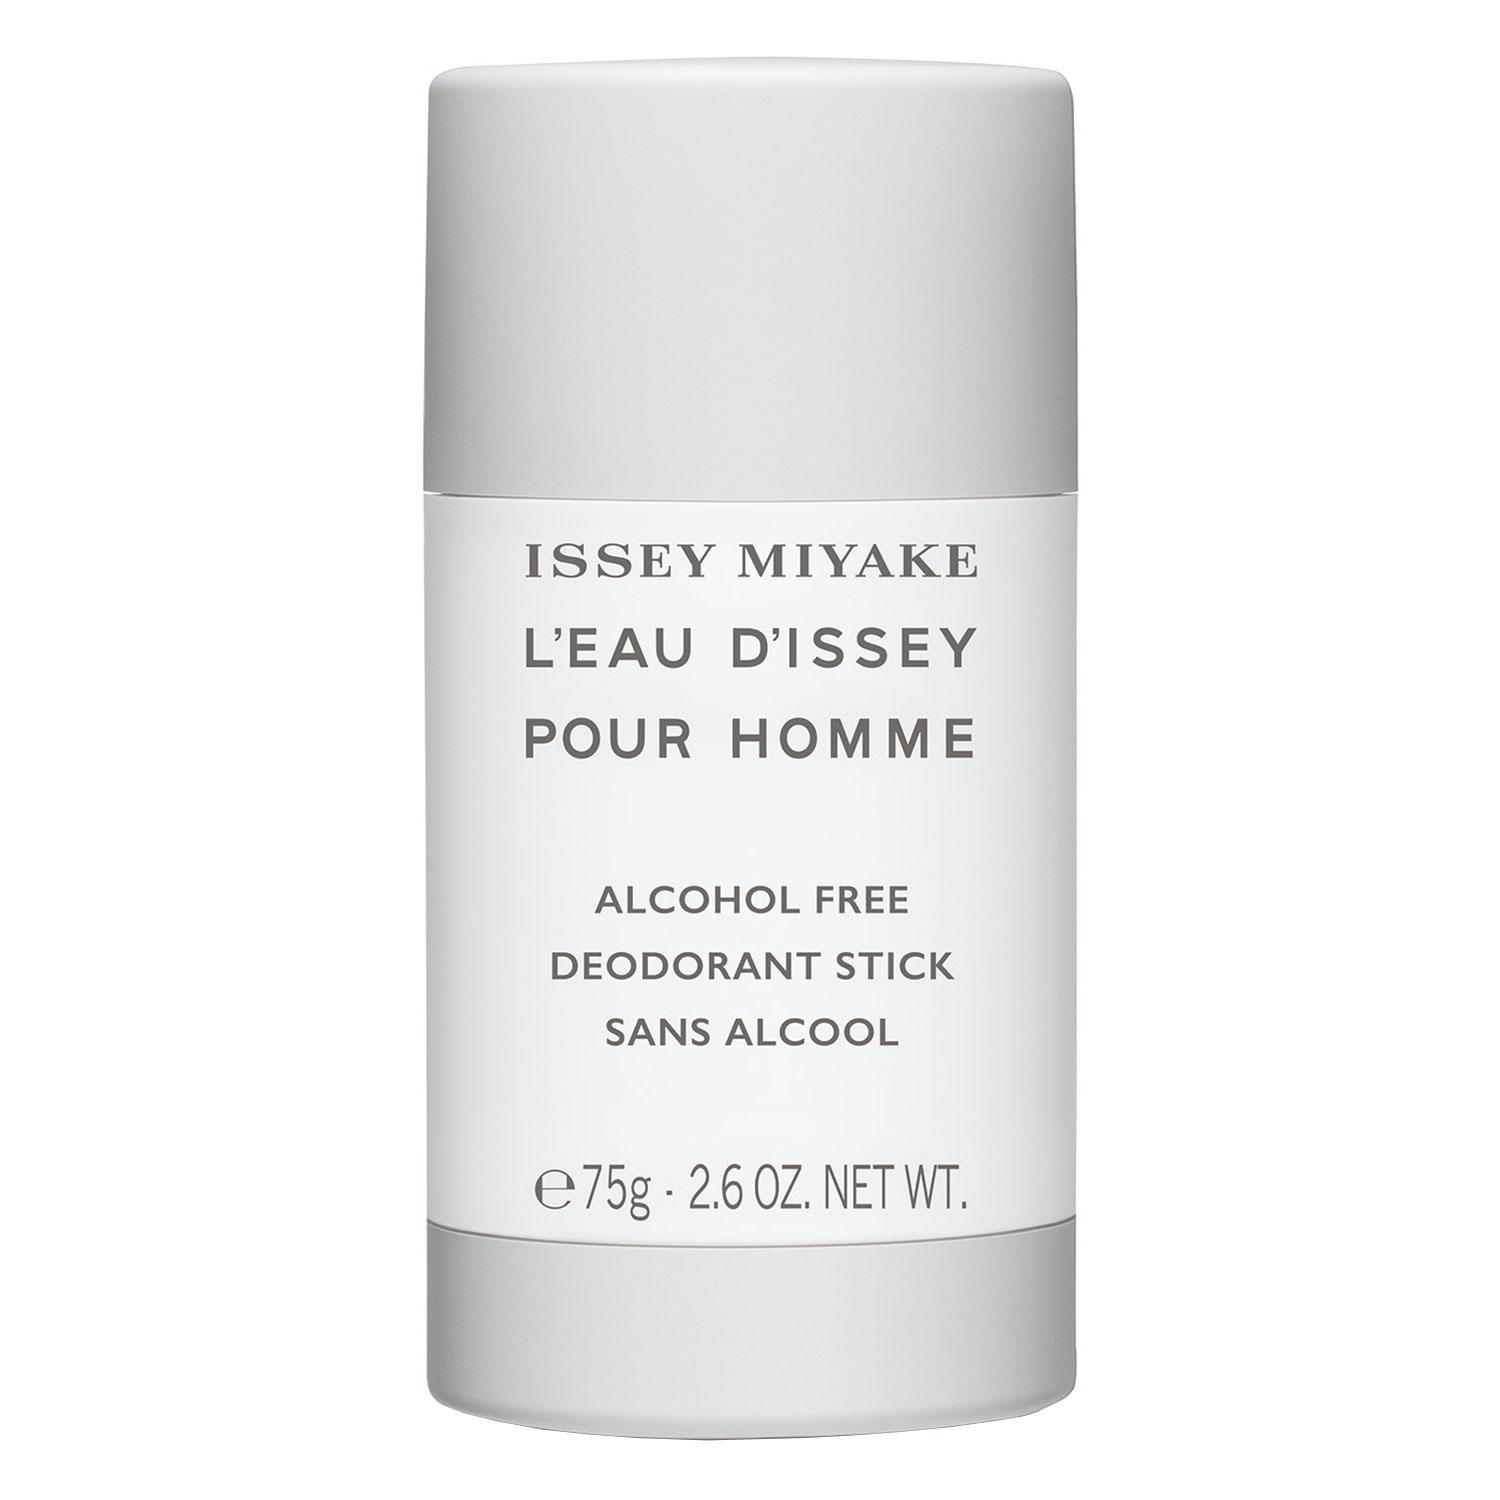 L'Eau D'Issey Pour Homme - Deodorant Stick ohne Alkohol